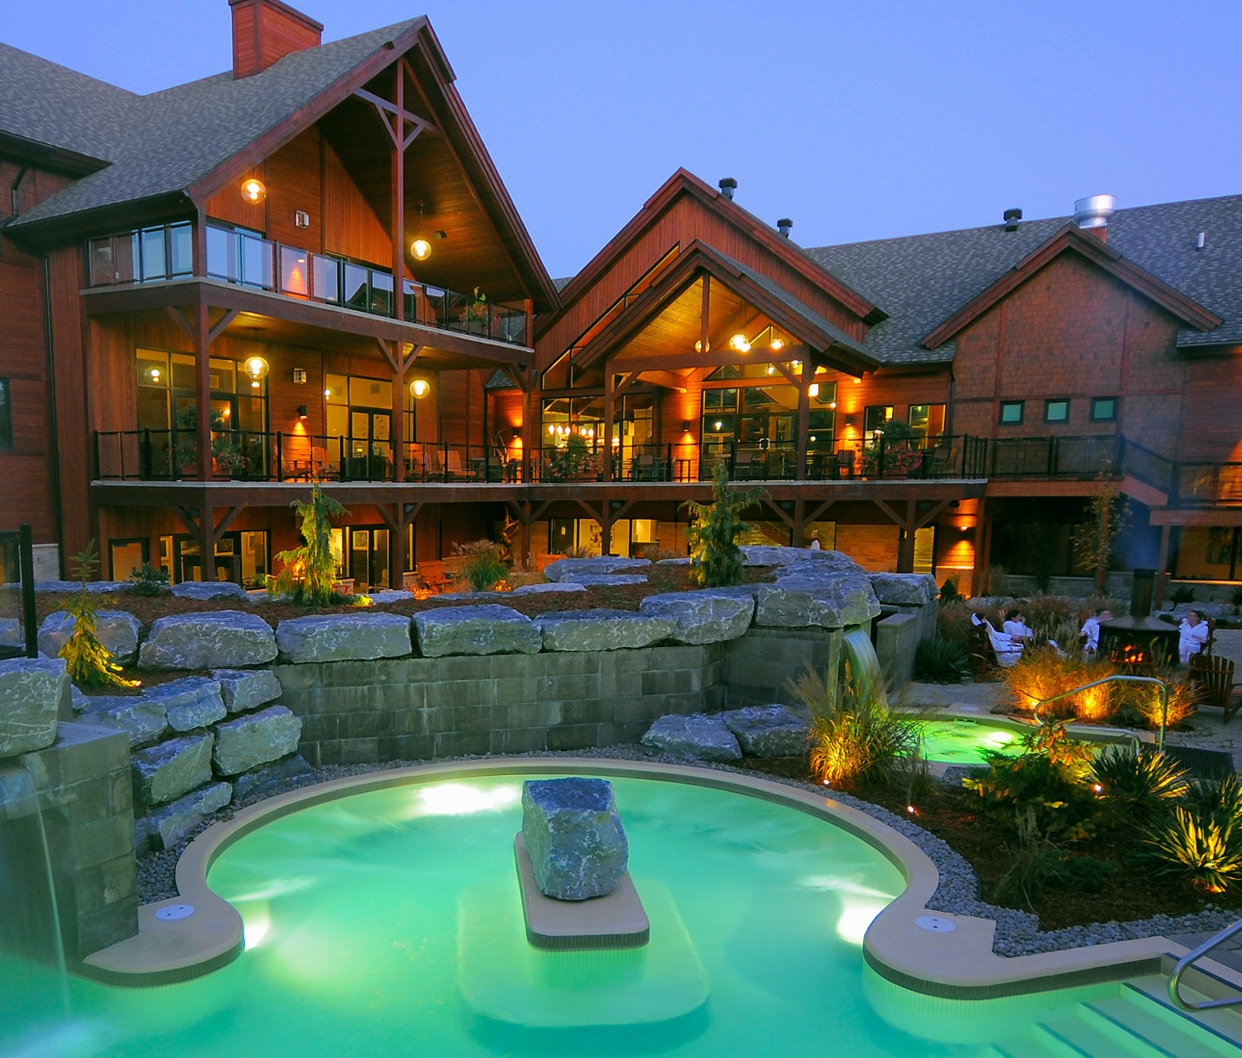 Un spa Kinipi nordique offrant un séjour agréable avec une piscine dotée d'une cascade relaxante.